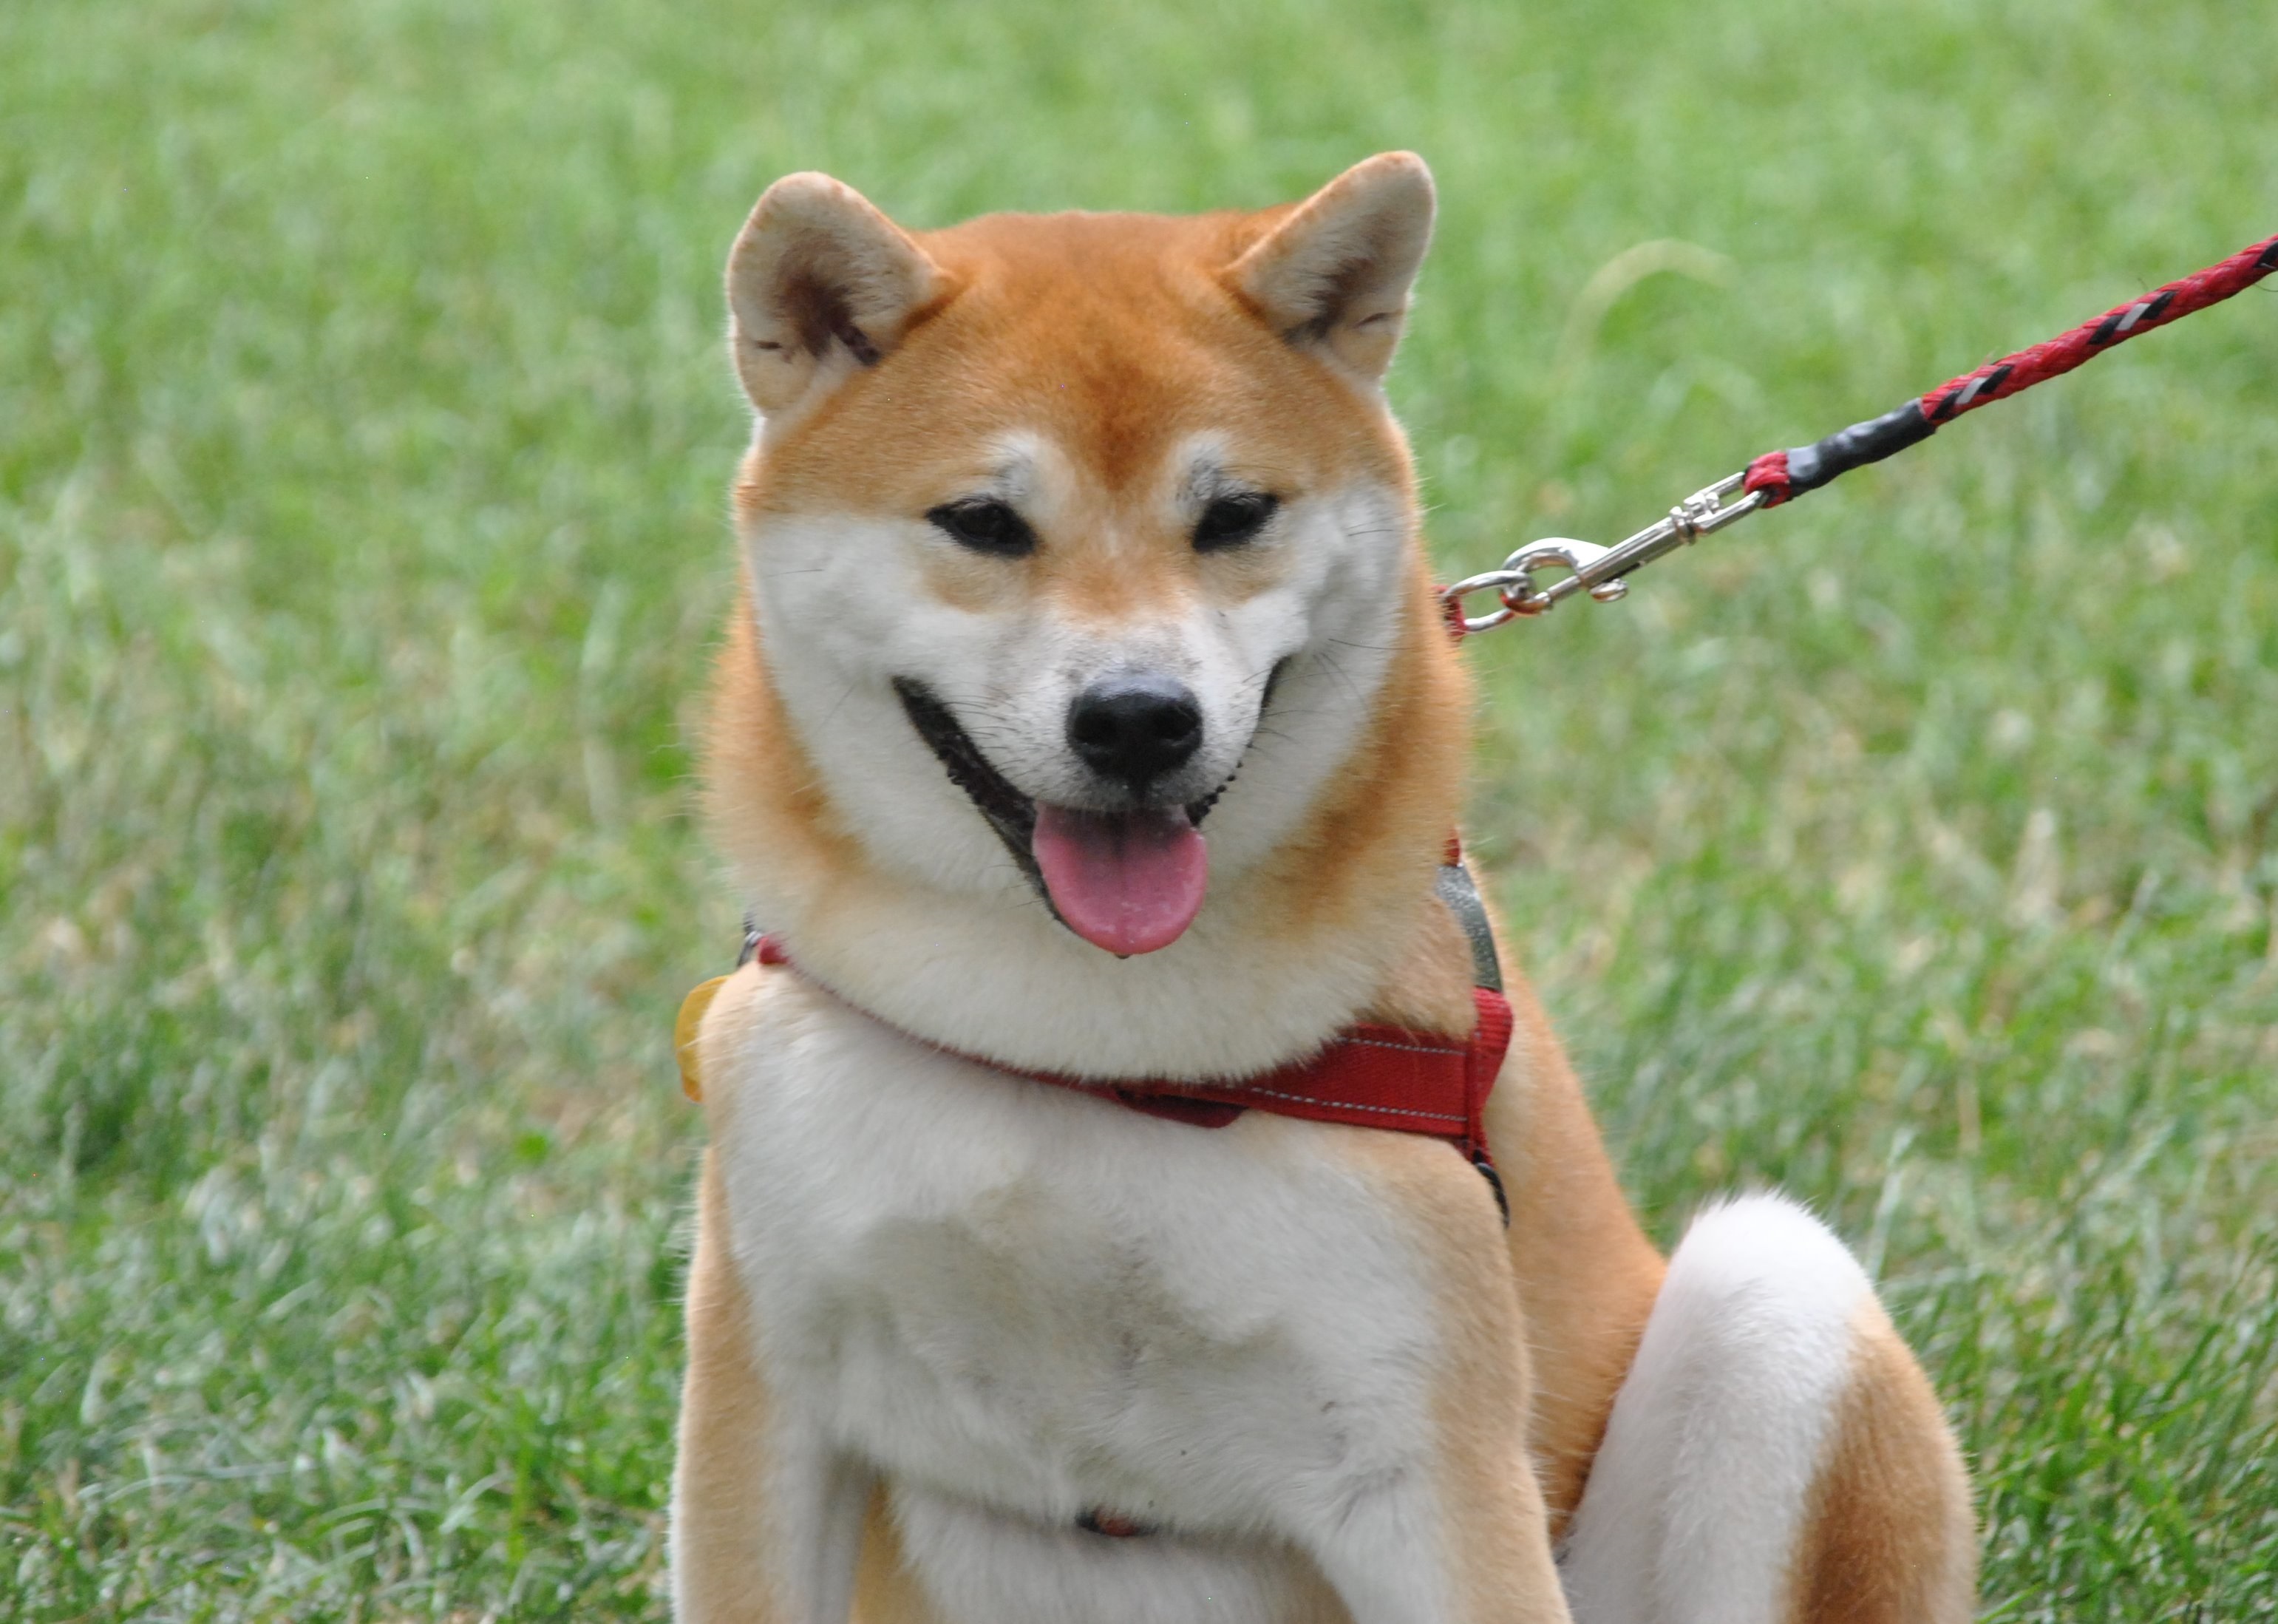 Photo: Shiba Inu dog